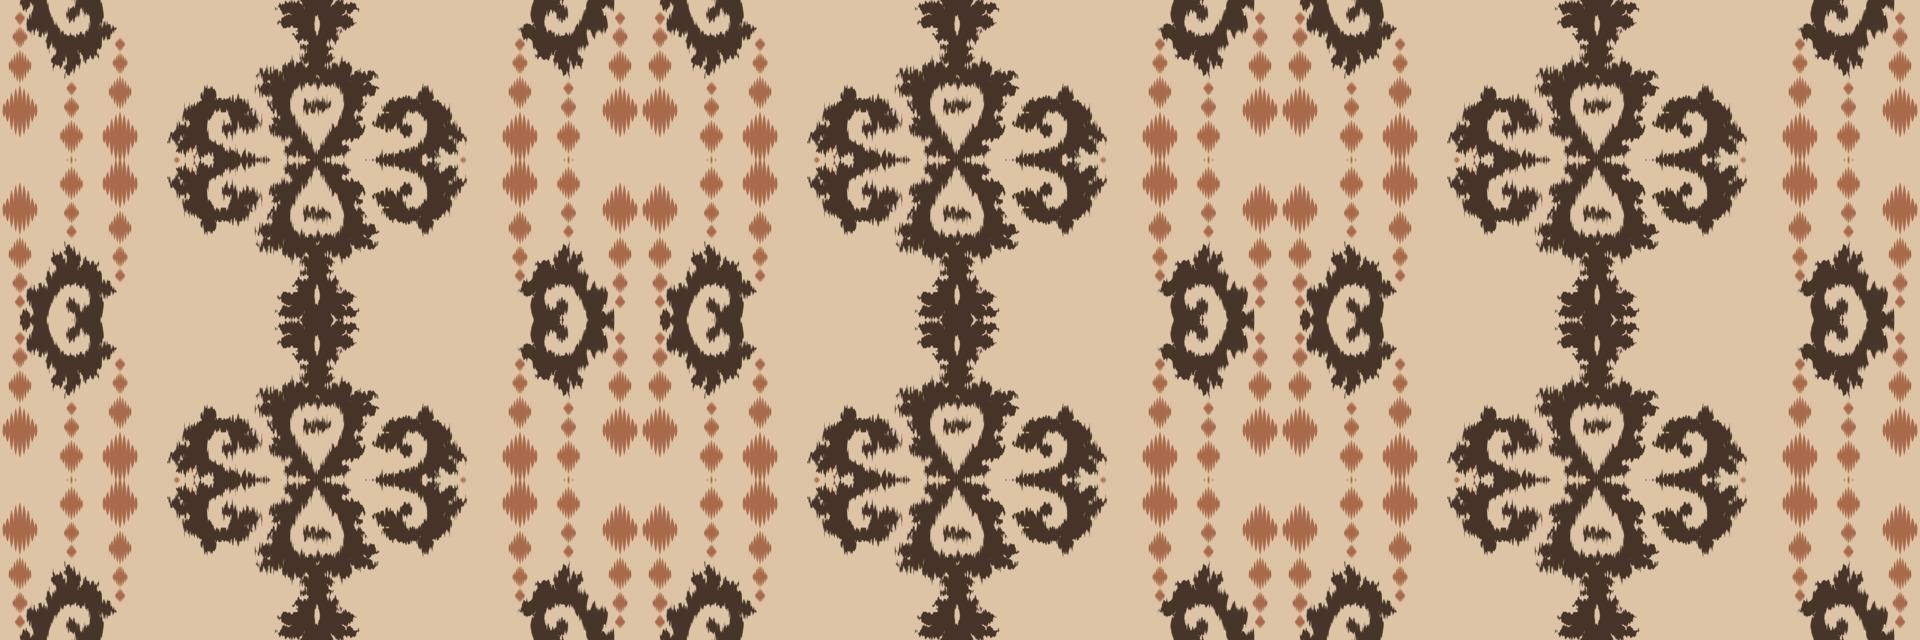 batik têxtil ikkat ou ikat projeta design de vetor digital sem costura padrão para impressão saree kurti borneo tecido borda escova símbolos amostras algodão